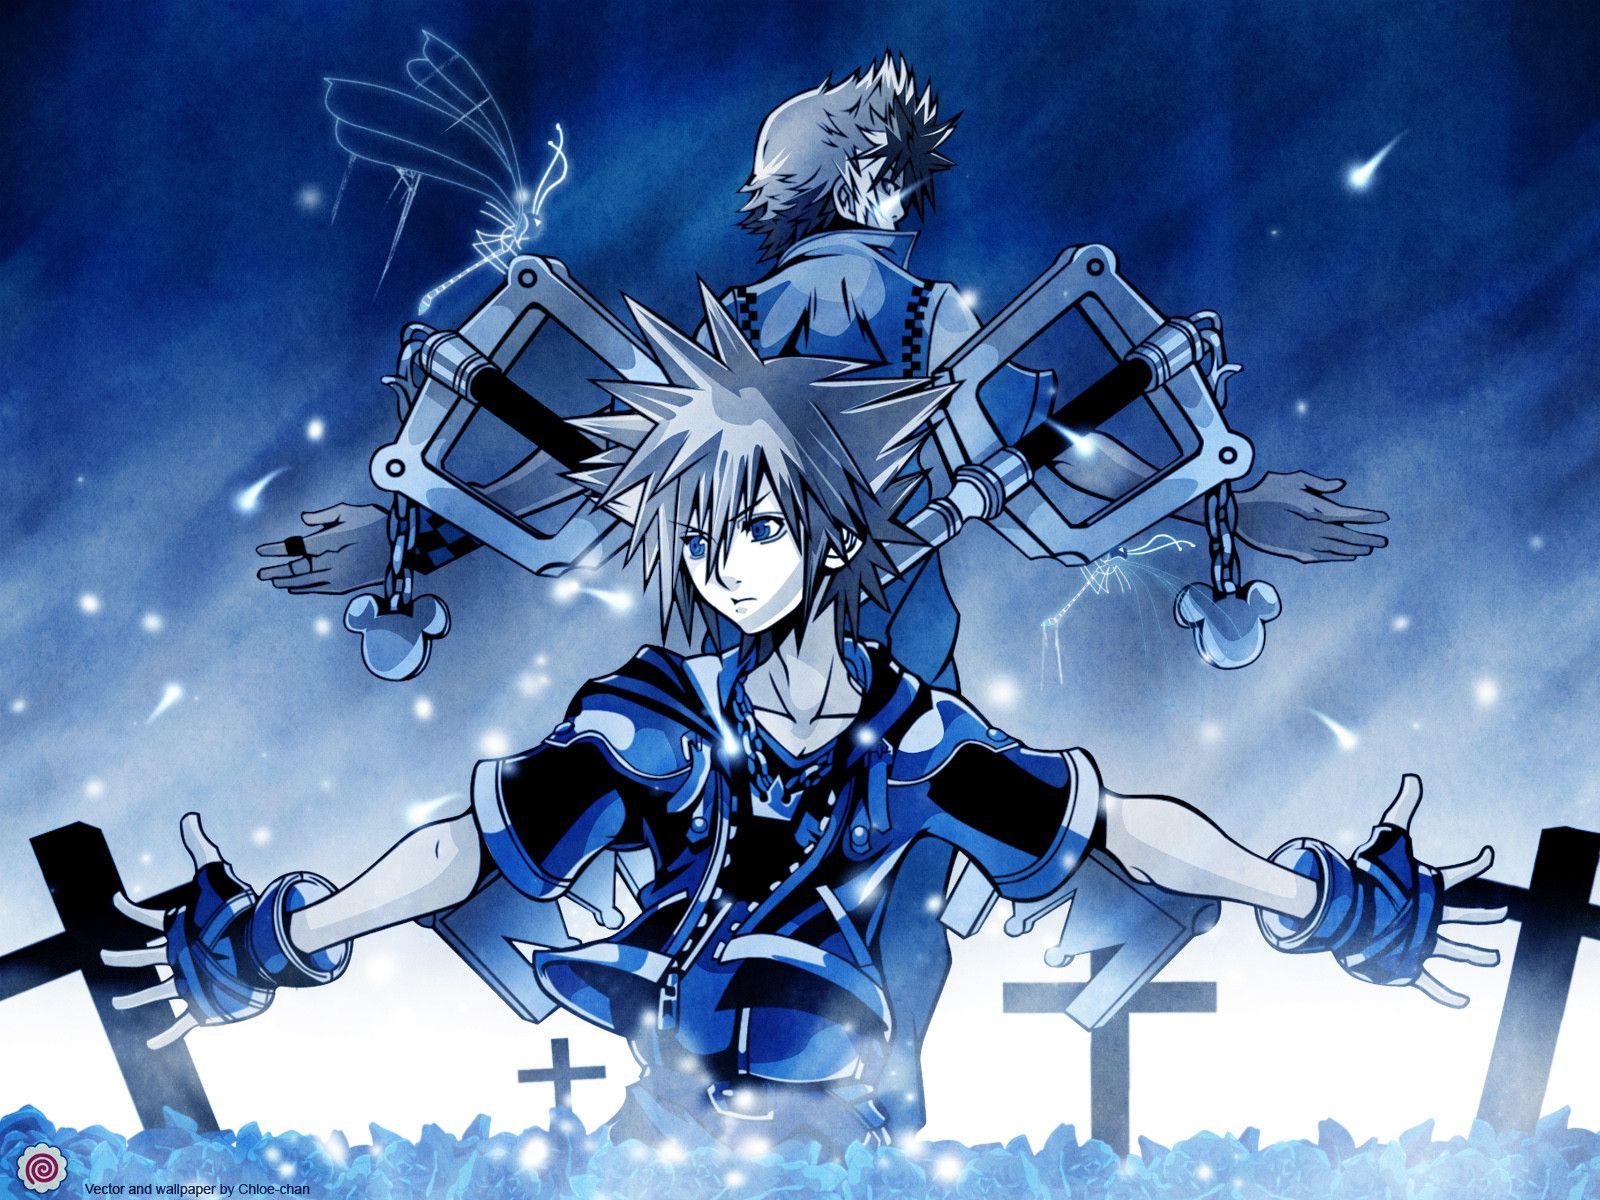 1600 x 1200 · jpeg - Kingdom Hearts Wallpaper Hd - WallpaperSafari